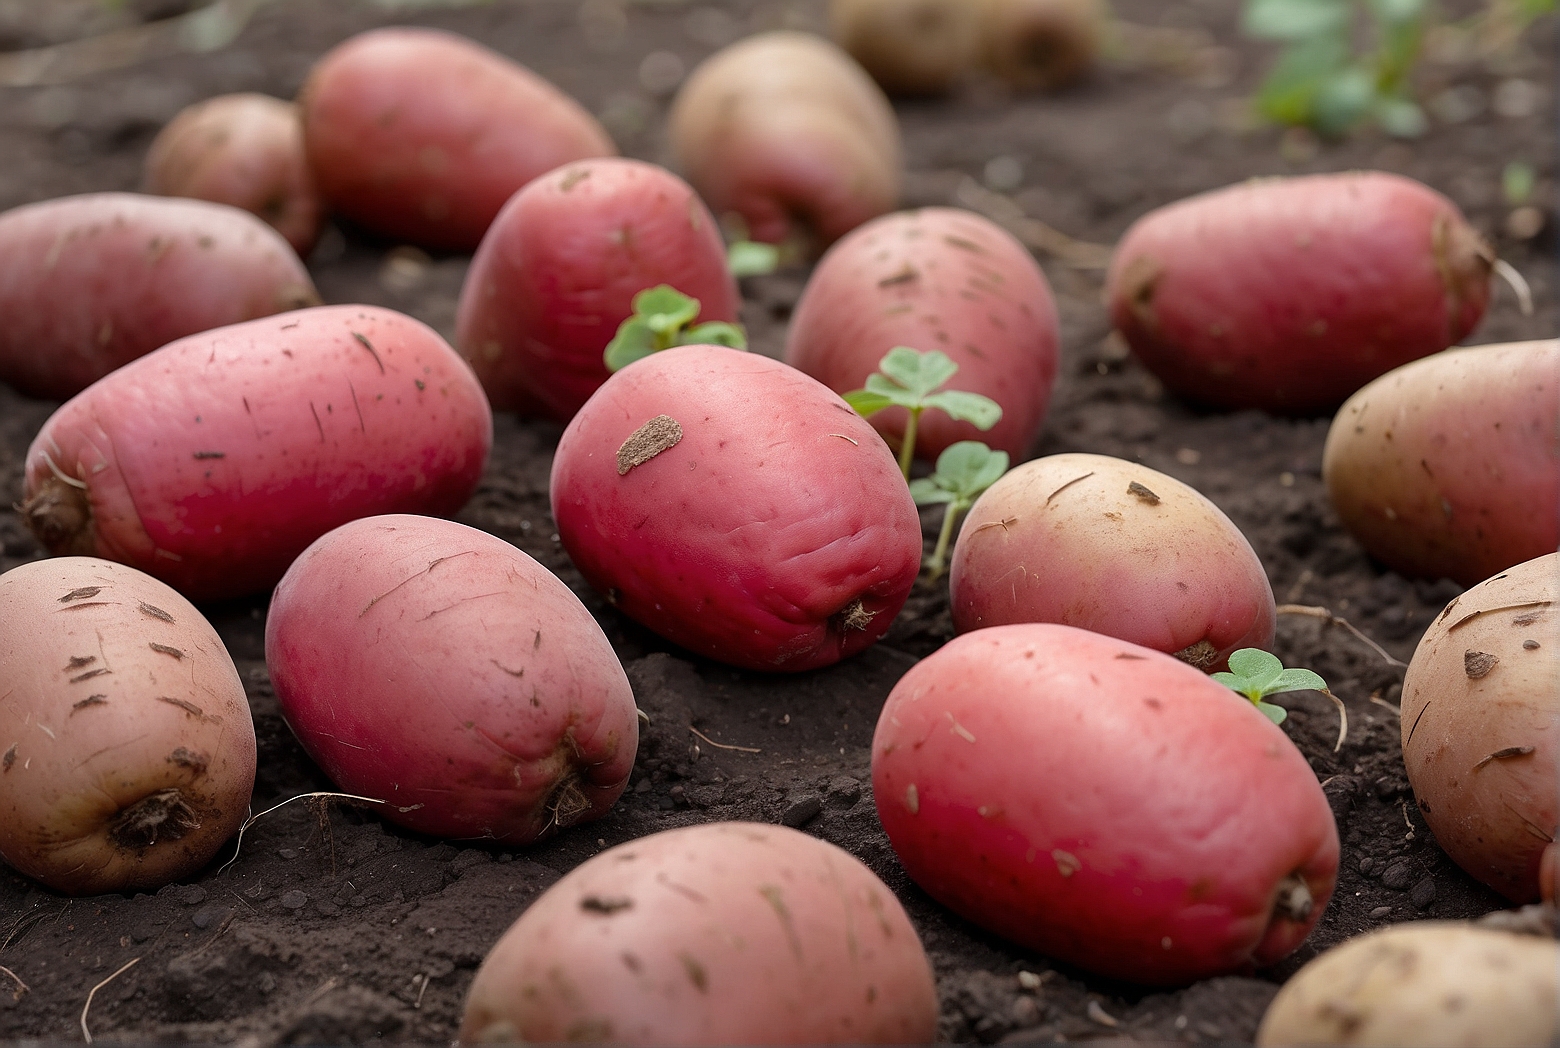 Default Growing Determinate Red Pontiac Seed Potatoes 1